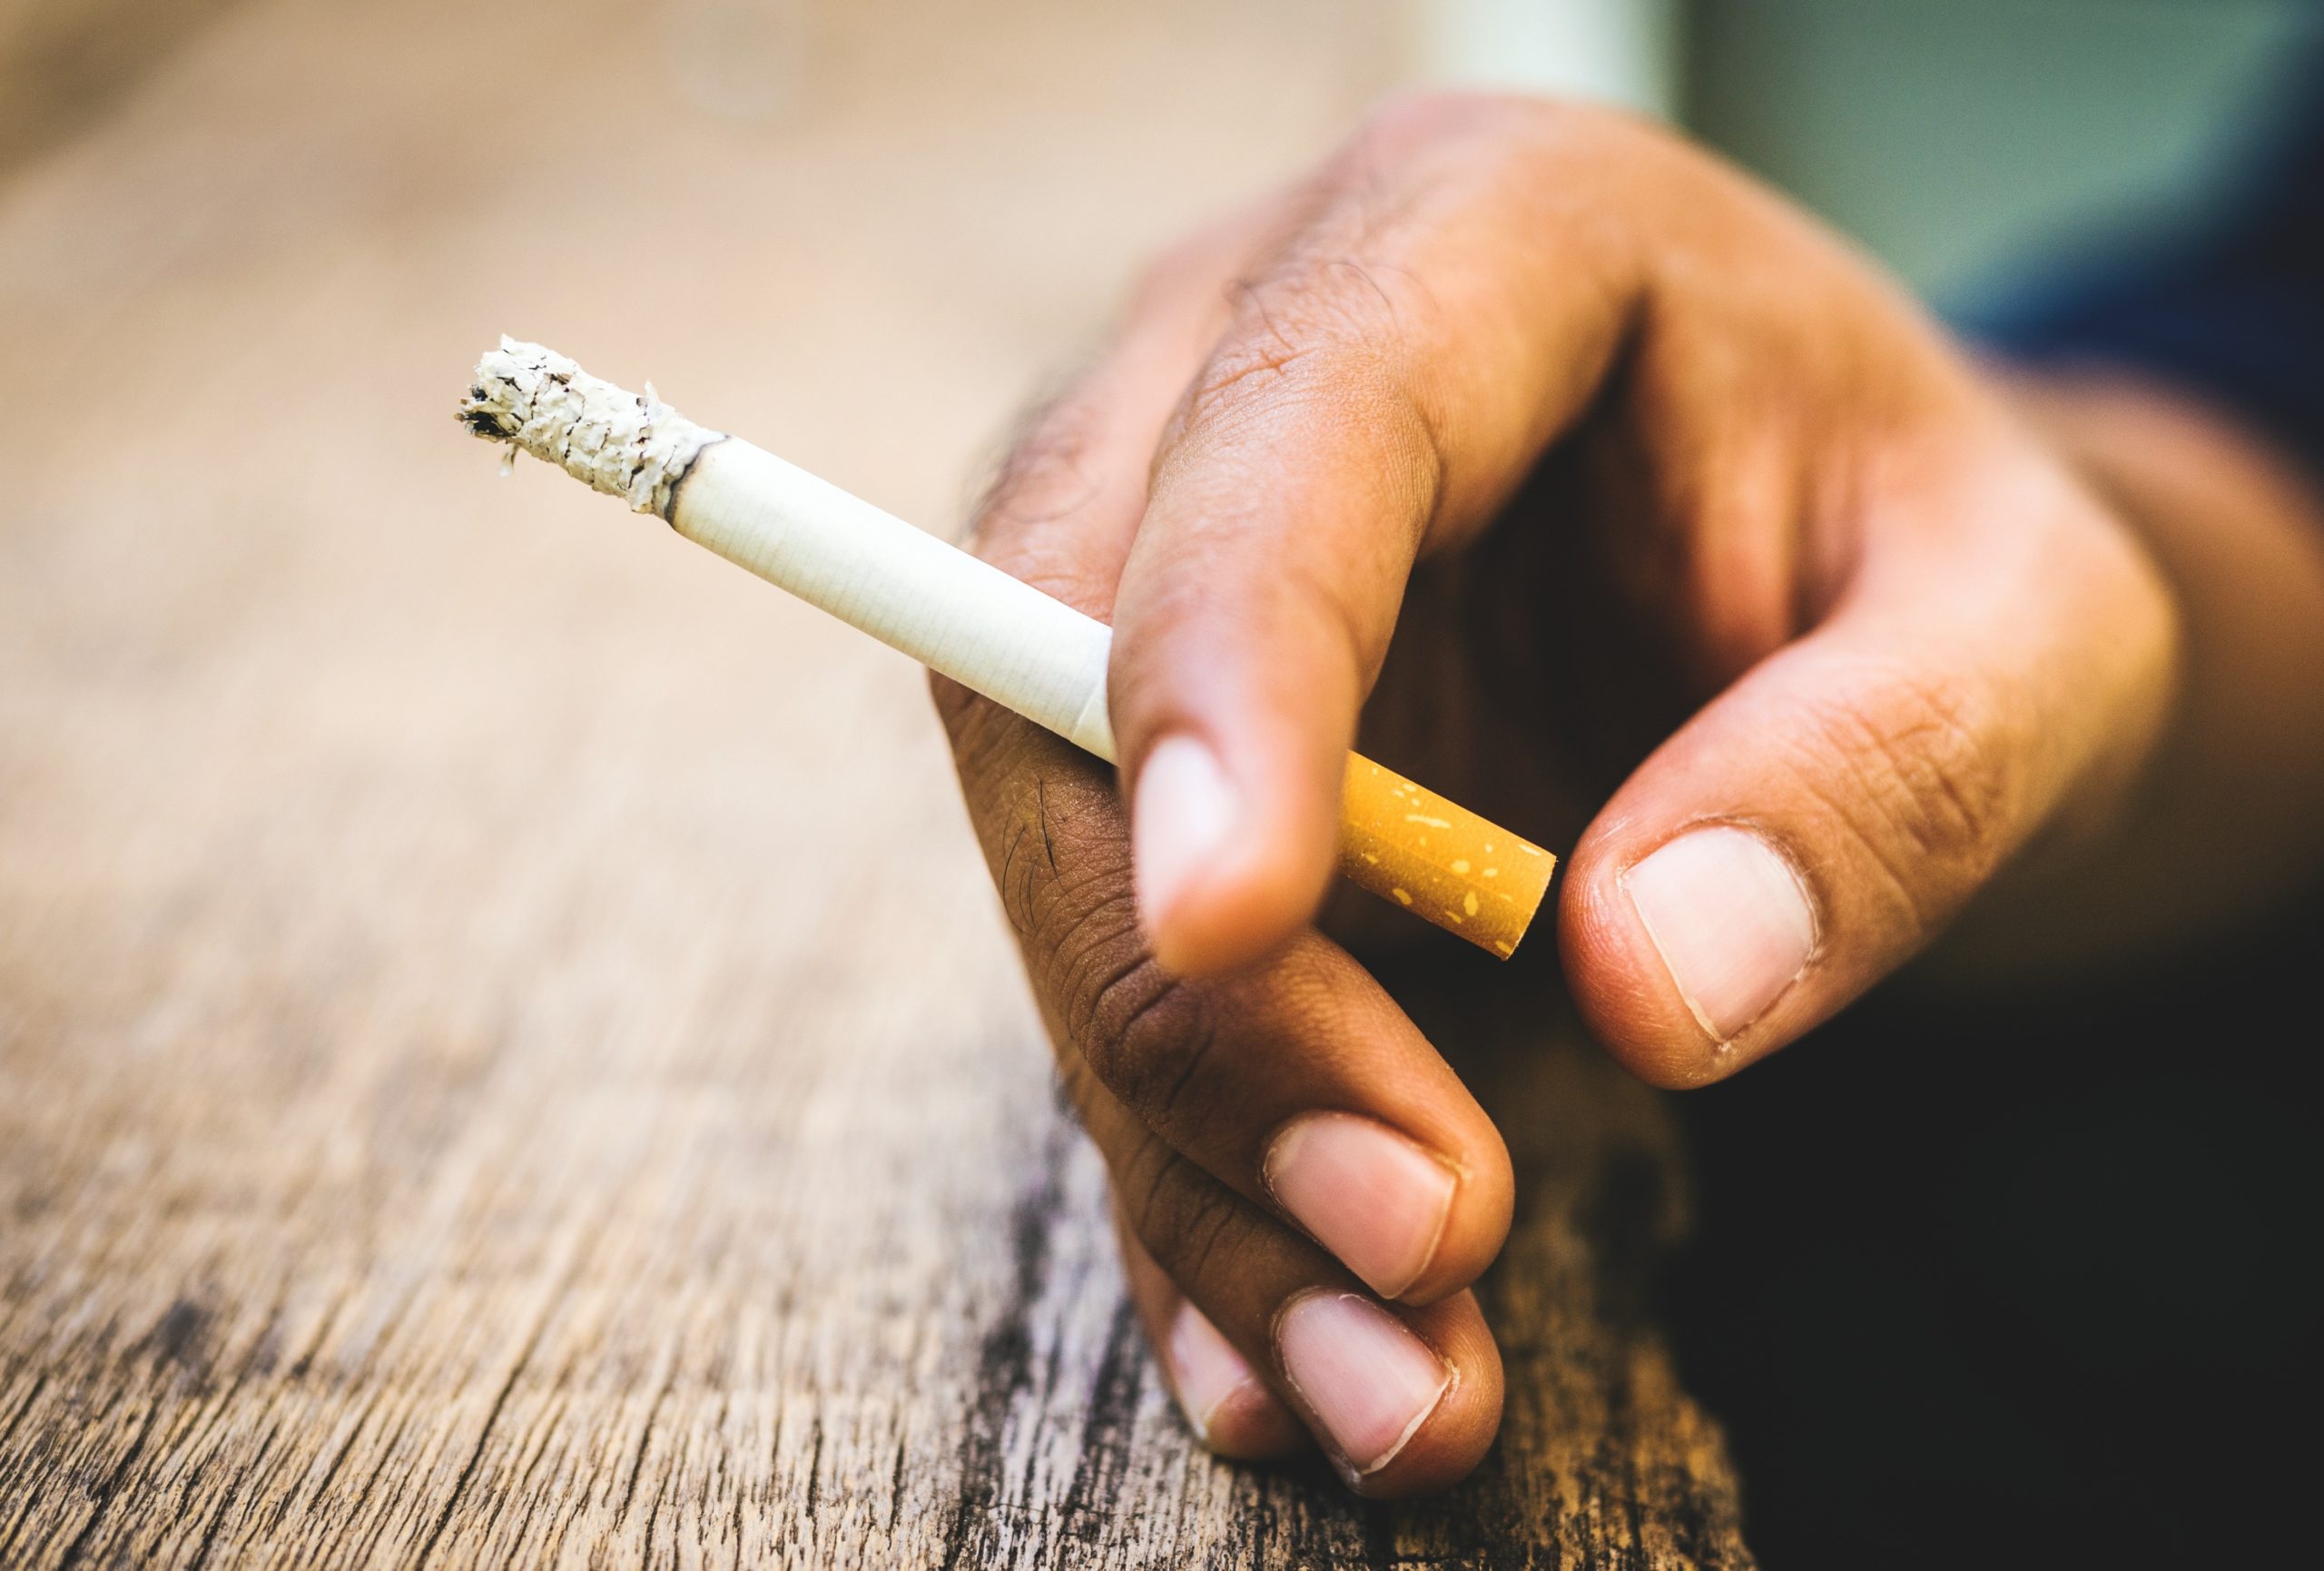 Tunisie: Les maladies liées au tabagisme coûtent à l’Etat 2 MDT par an